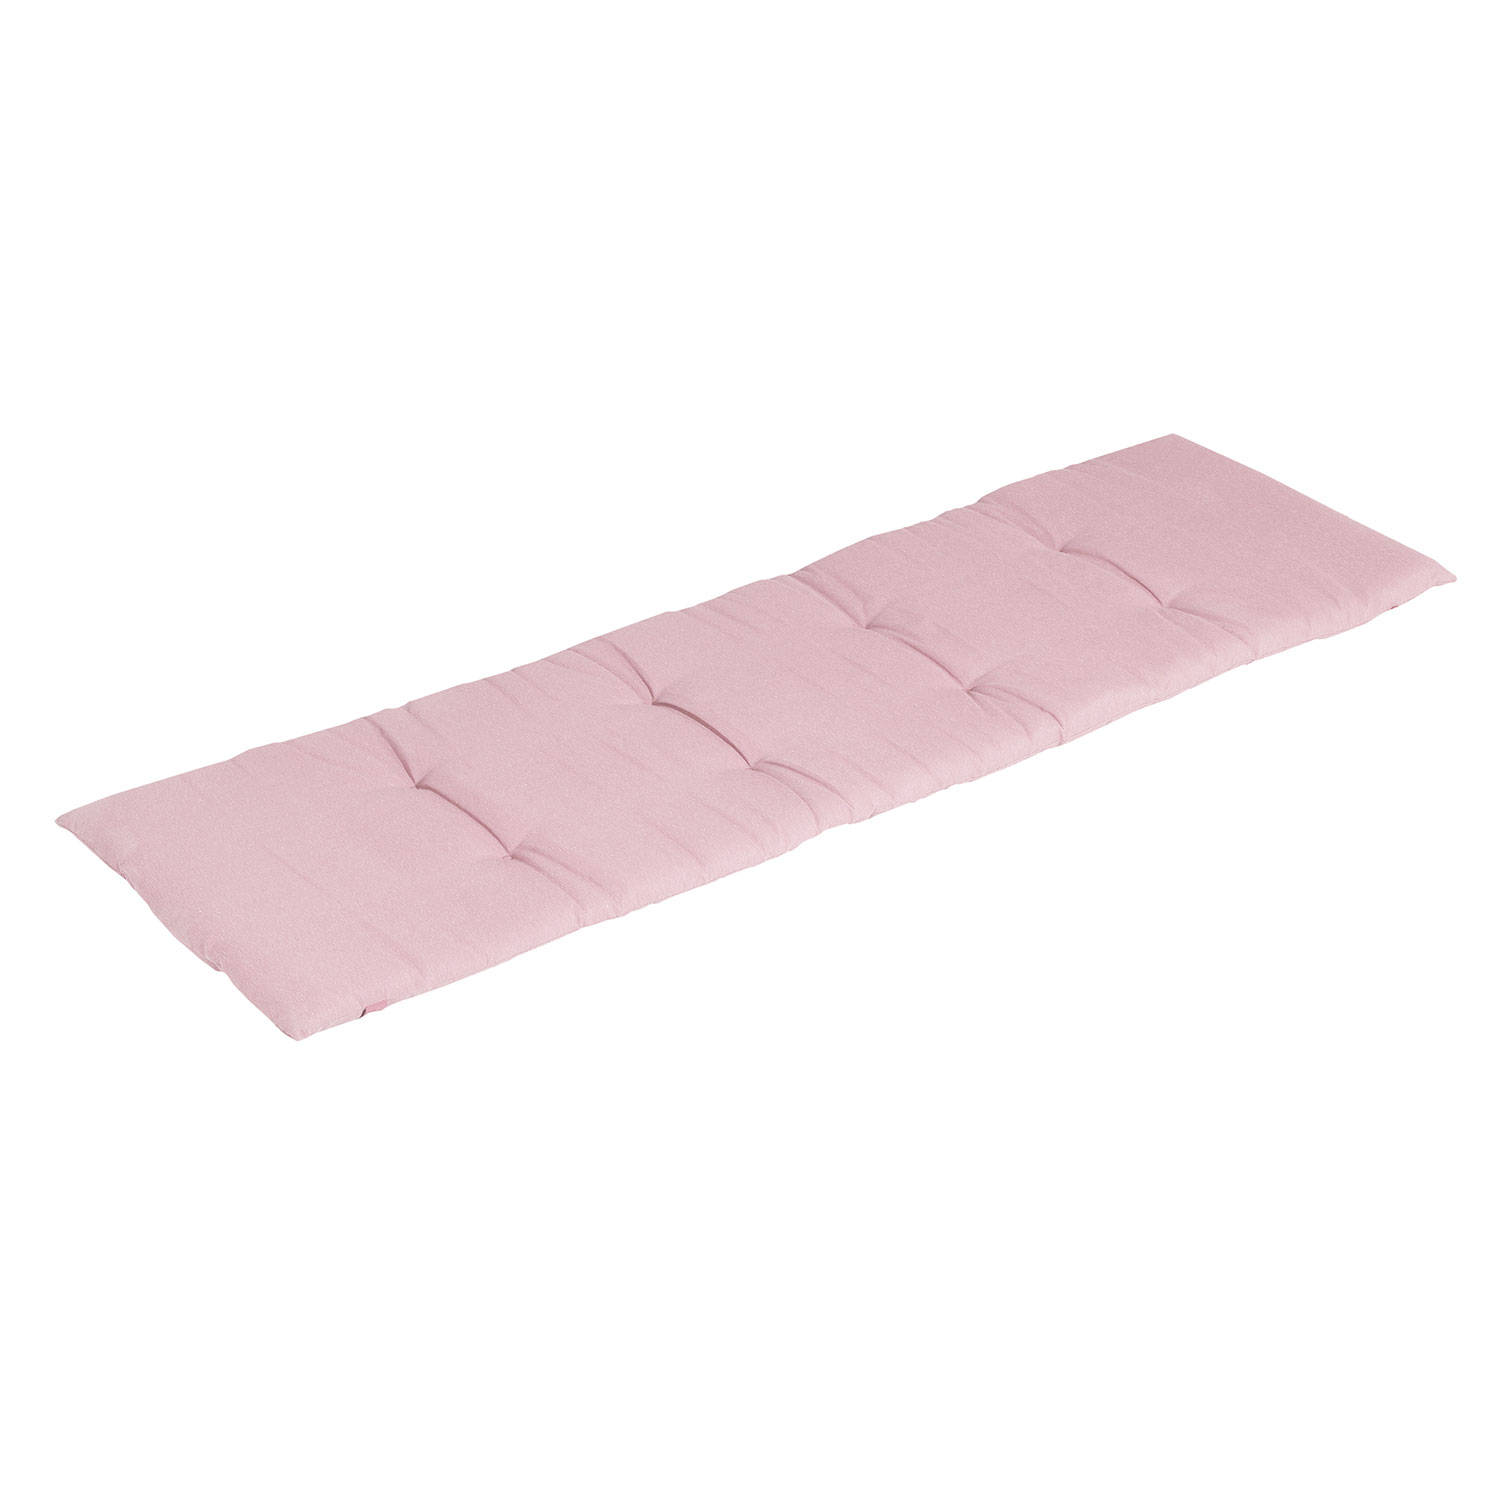 Madison Ligbedkussen Panama Soft Pink 195x60 Roze